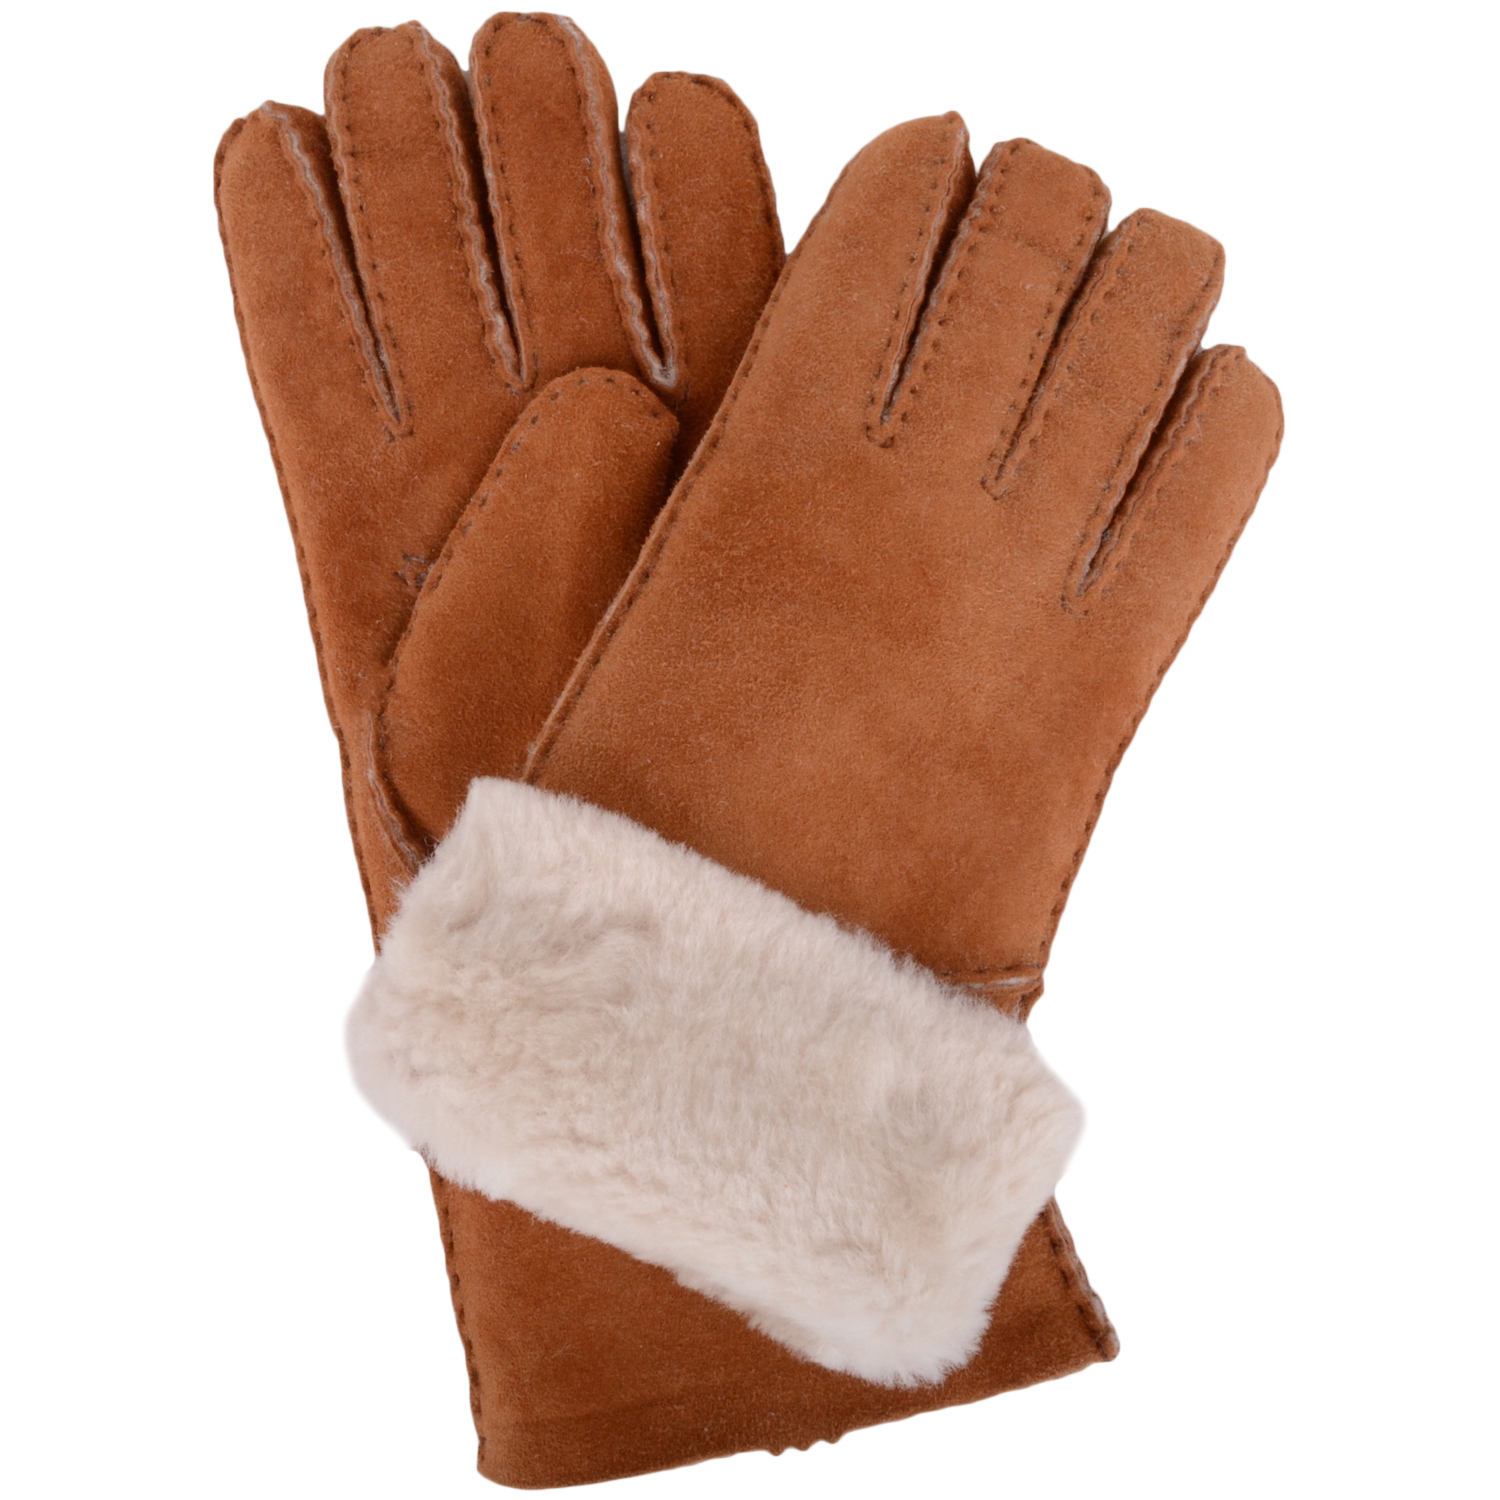 Vicky - Full Sheepskin Glove Long Fold Back Cuff - Tan